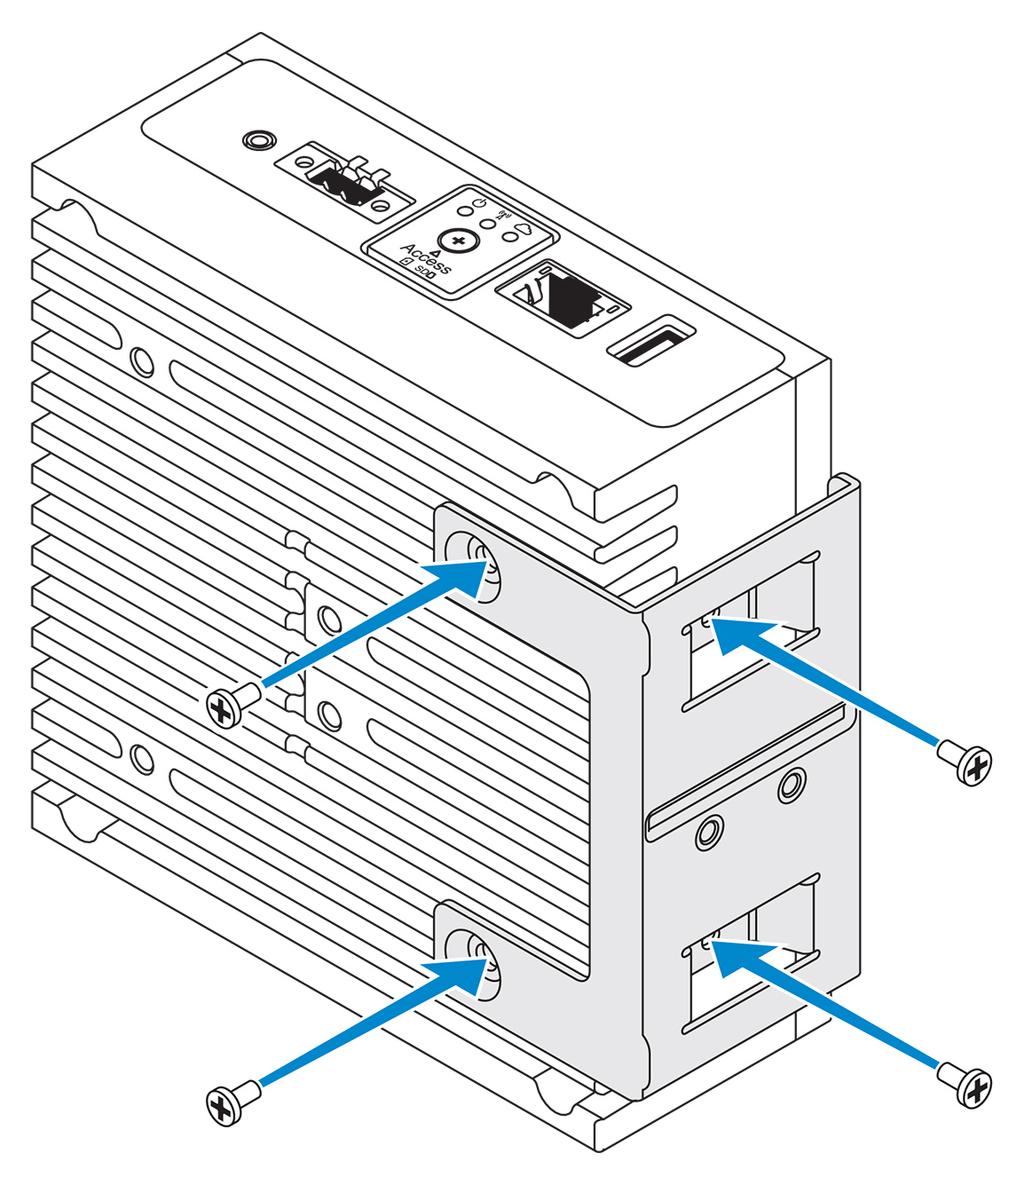 3. DIN rayı montaj braketi üzerindeki vida deliklerini dikey montaj braketindeki vida delikleriyle